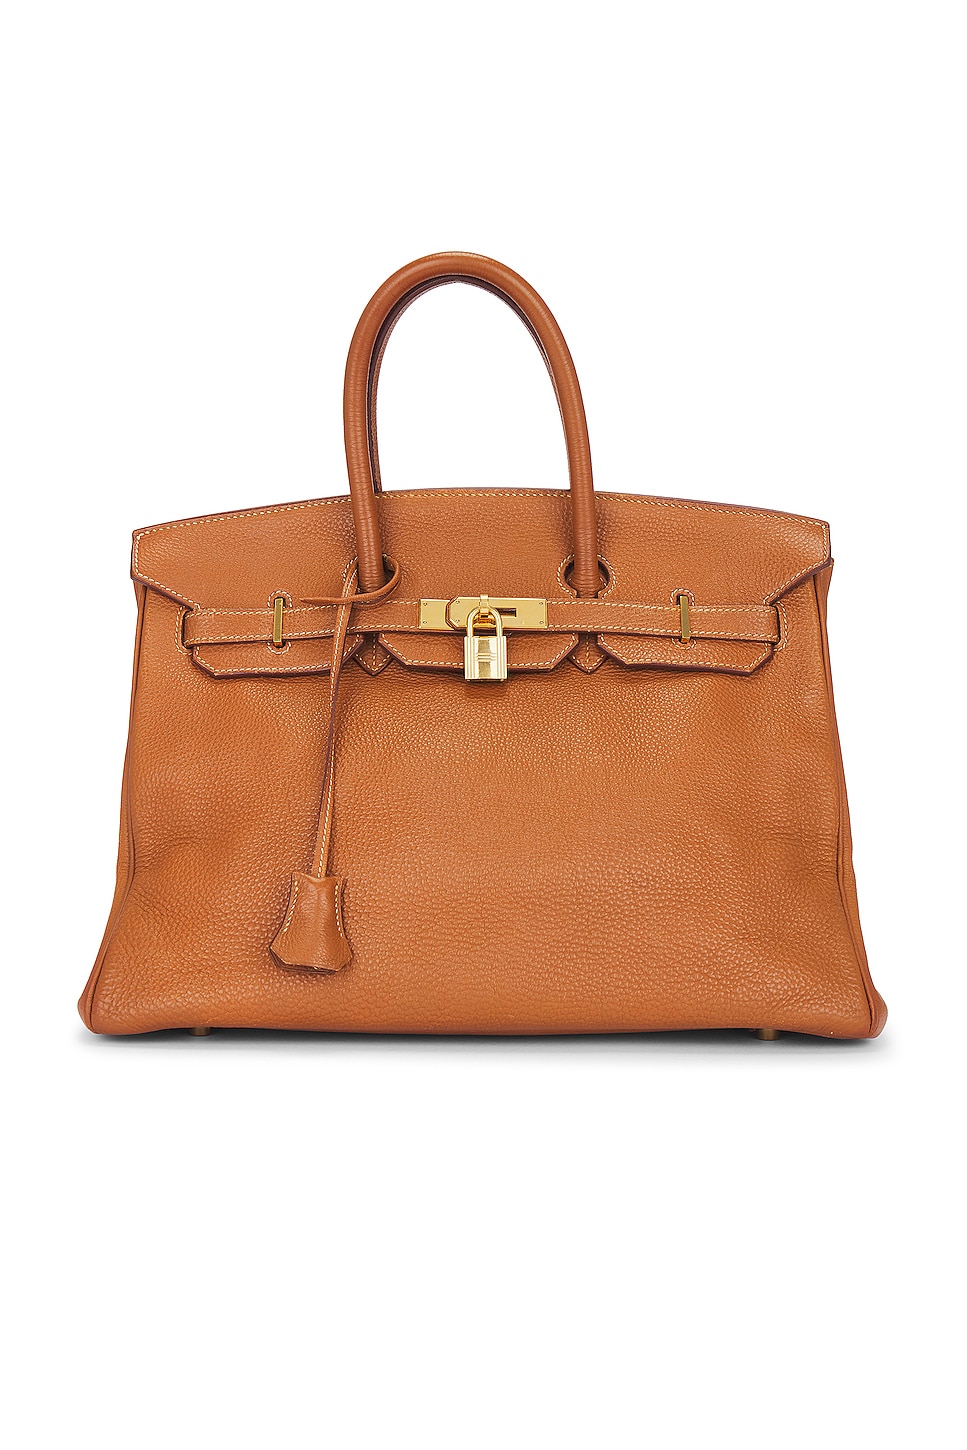 FWRD Renew Hermes Kelly Pochette Handbag in Rose Swift